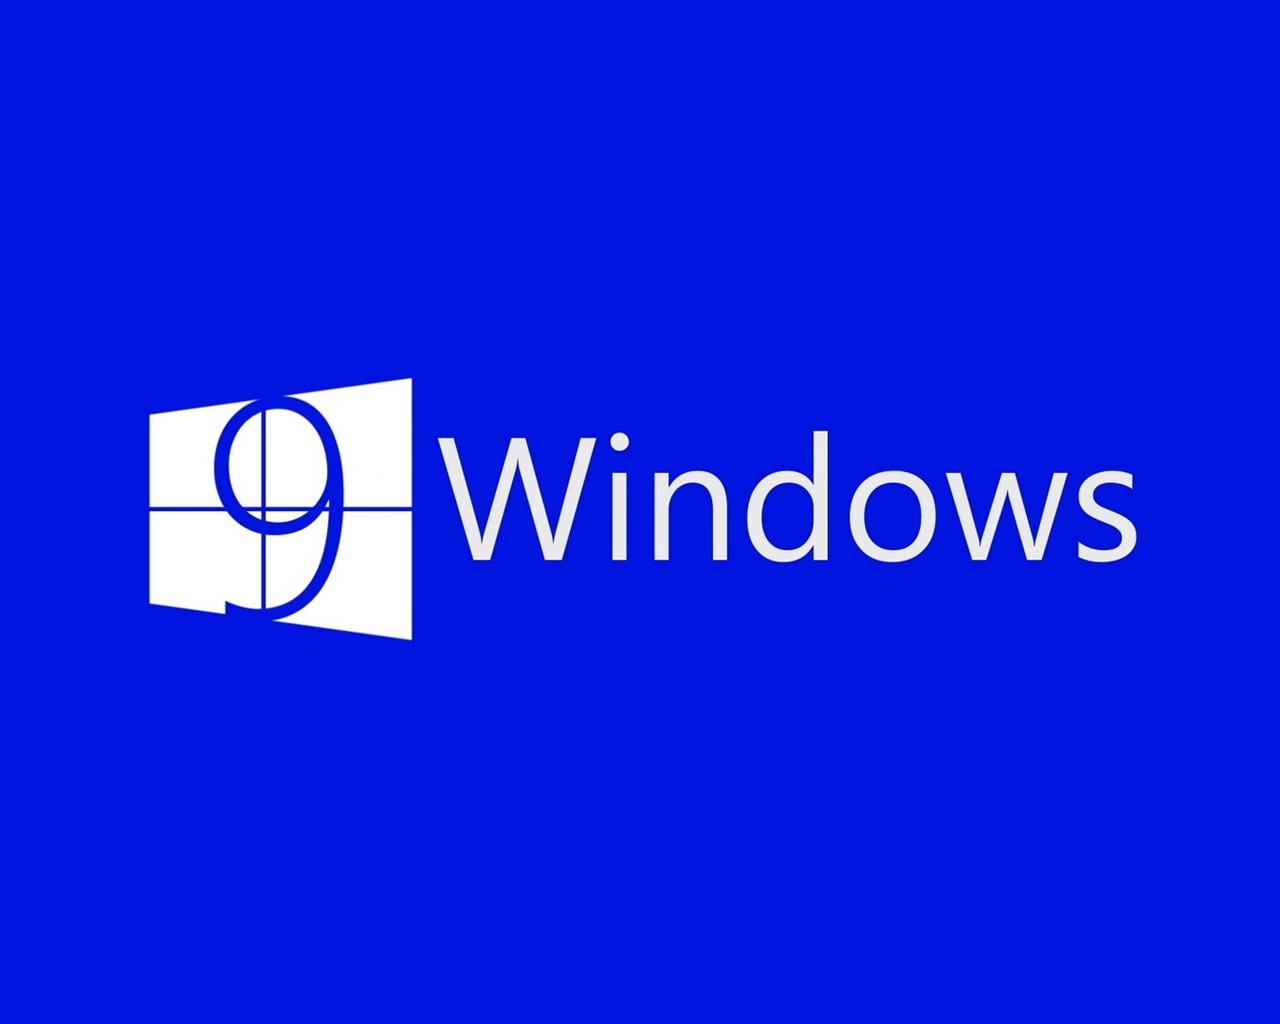 Microsoft Windowsの9システムテーマのHD壁紙 #4 - 1280x1024